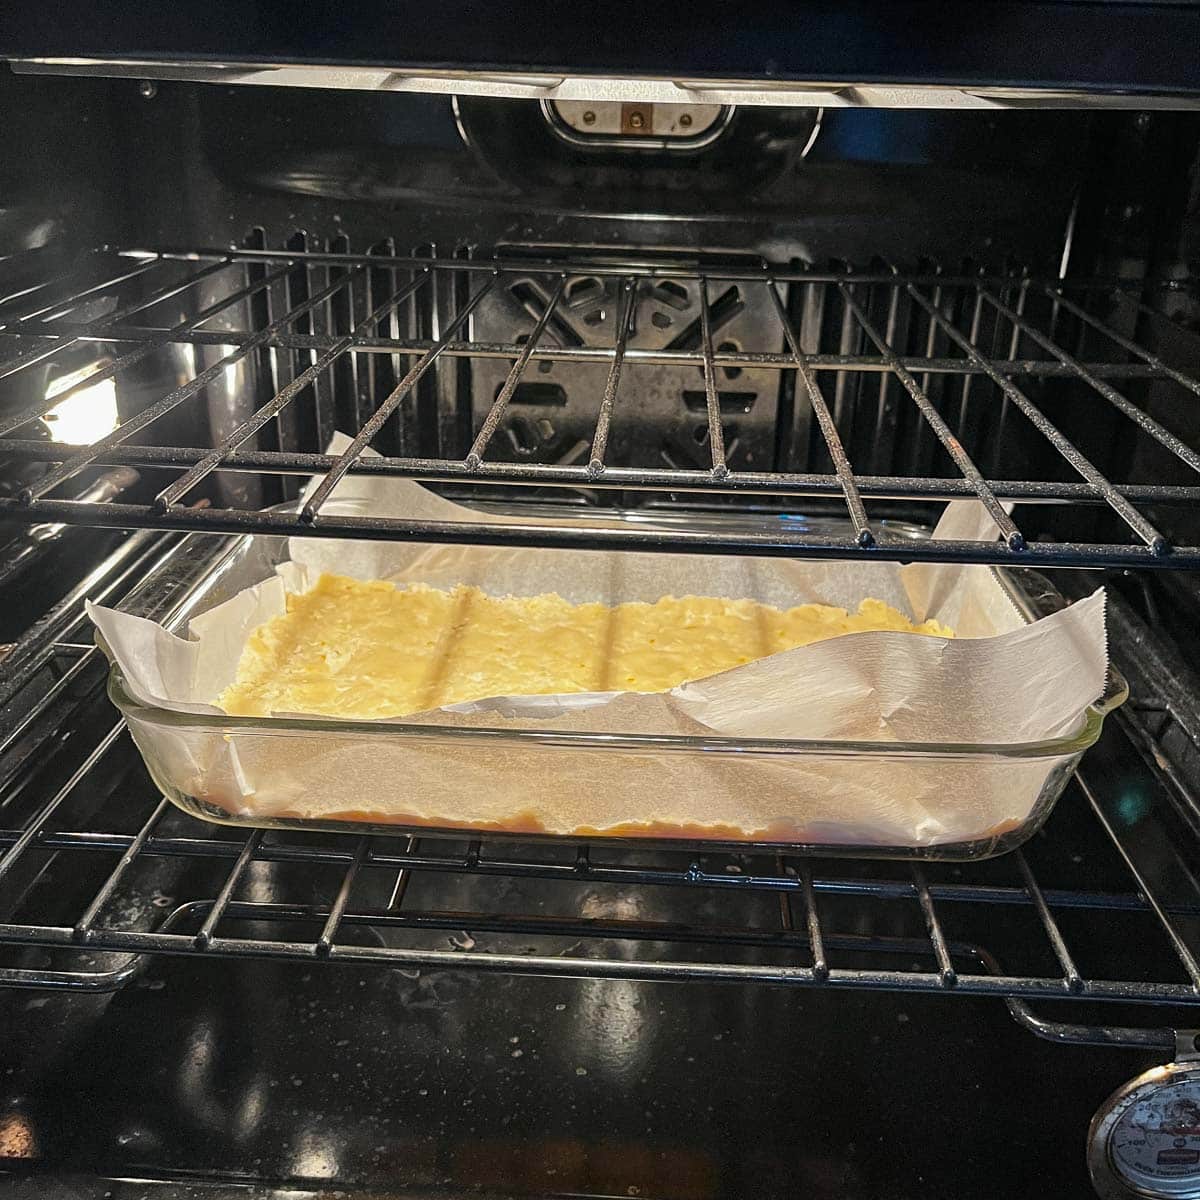 lemon bars shortbread crust baking in the oven